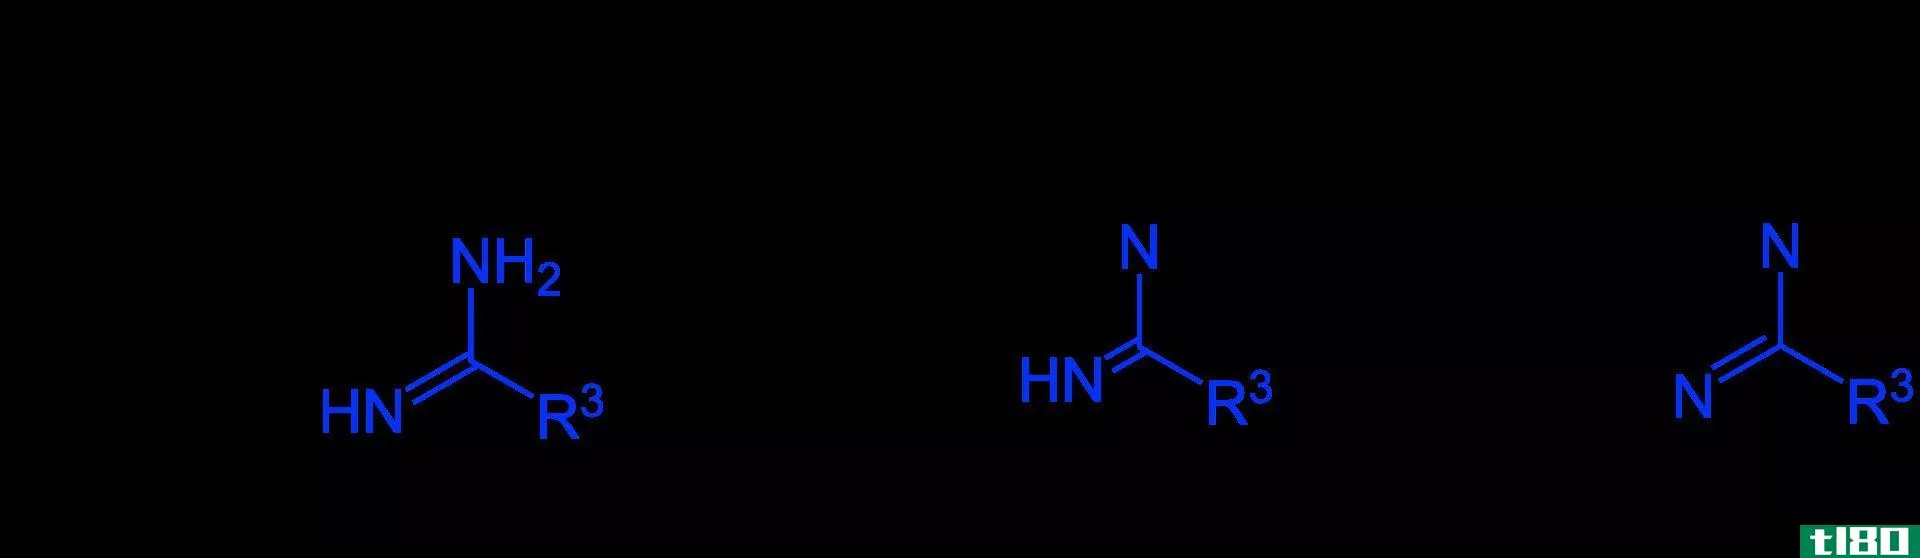 嘌呤(purine)和嘧啶合成(pyrimidine synthesis)的区别